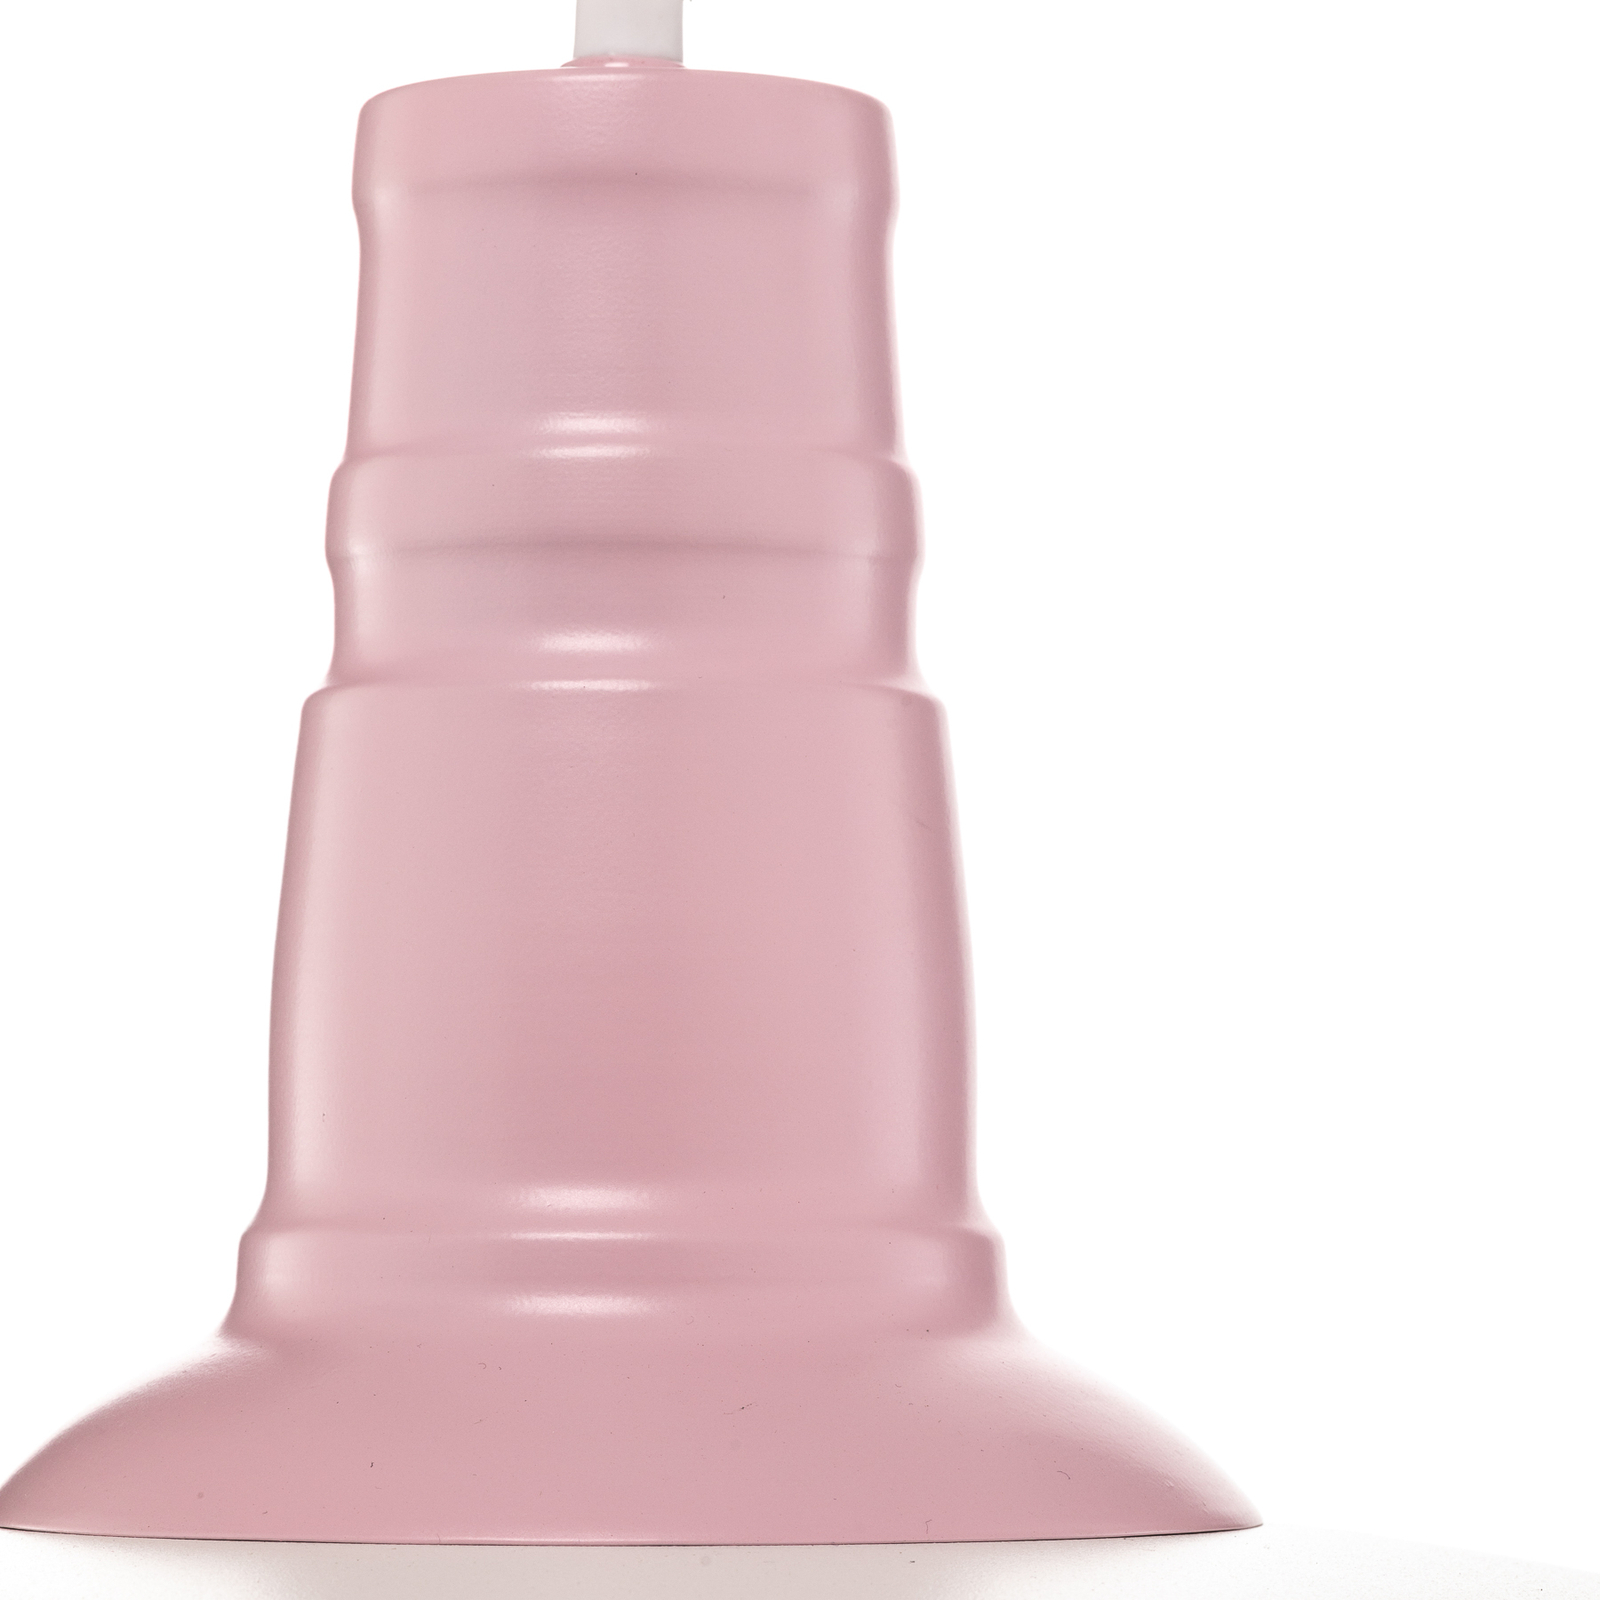 Lámpara colgante Enzo look industrial, blanco/rosa